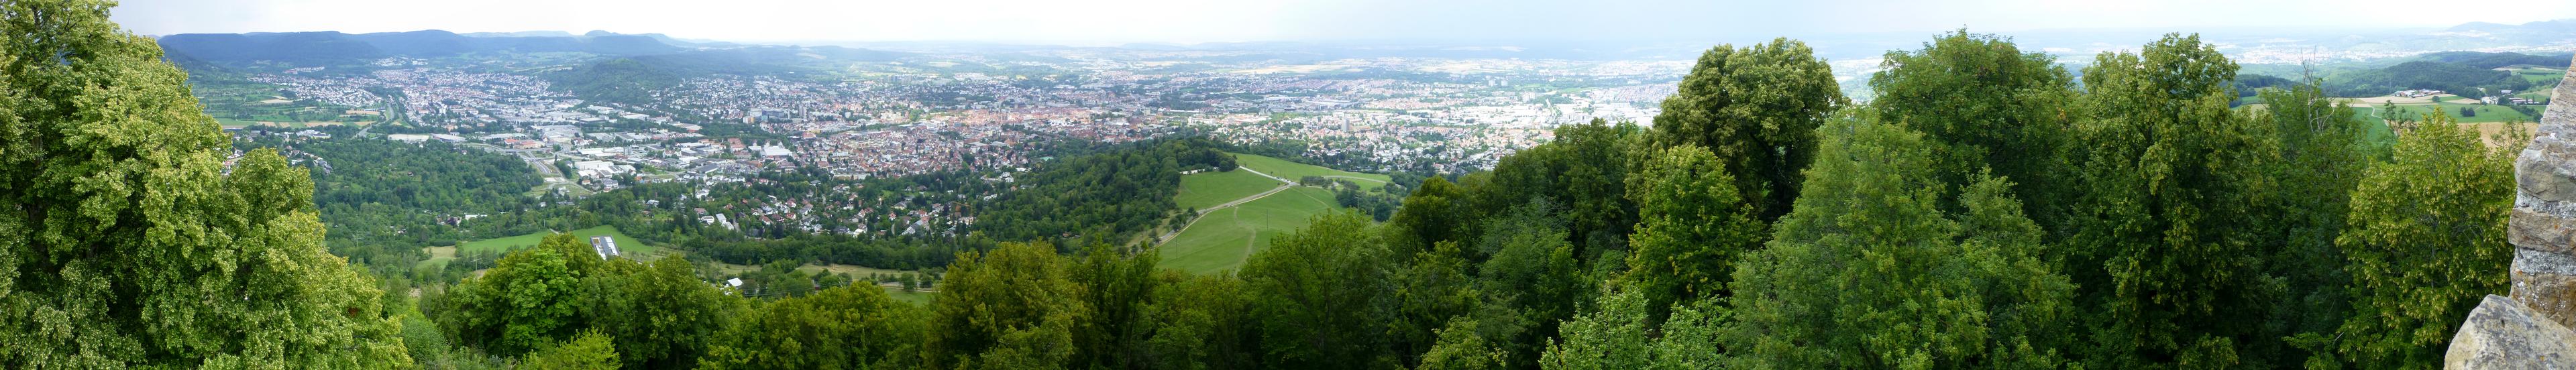 Banner image for Reutlingen on GigsGuide